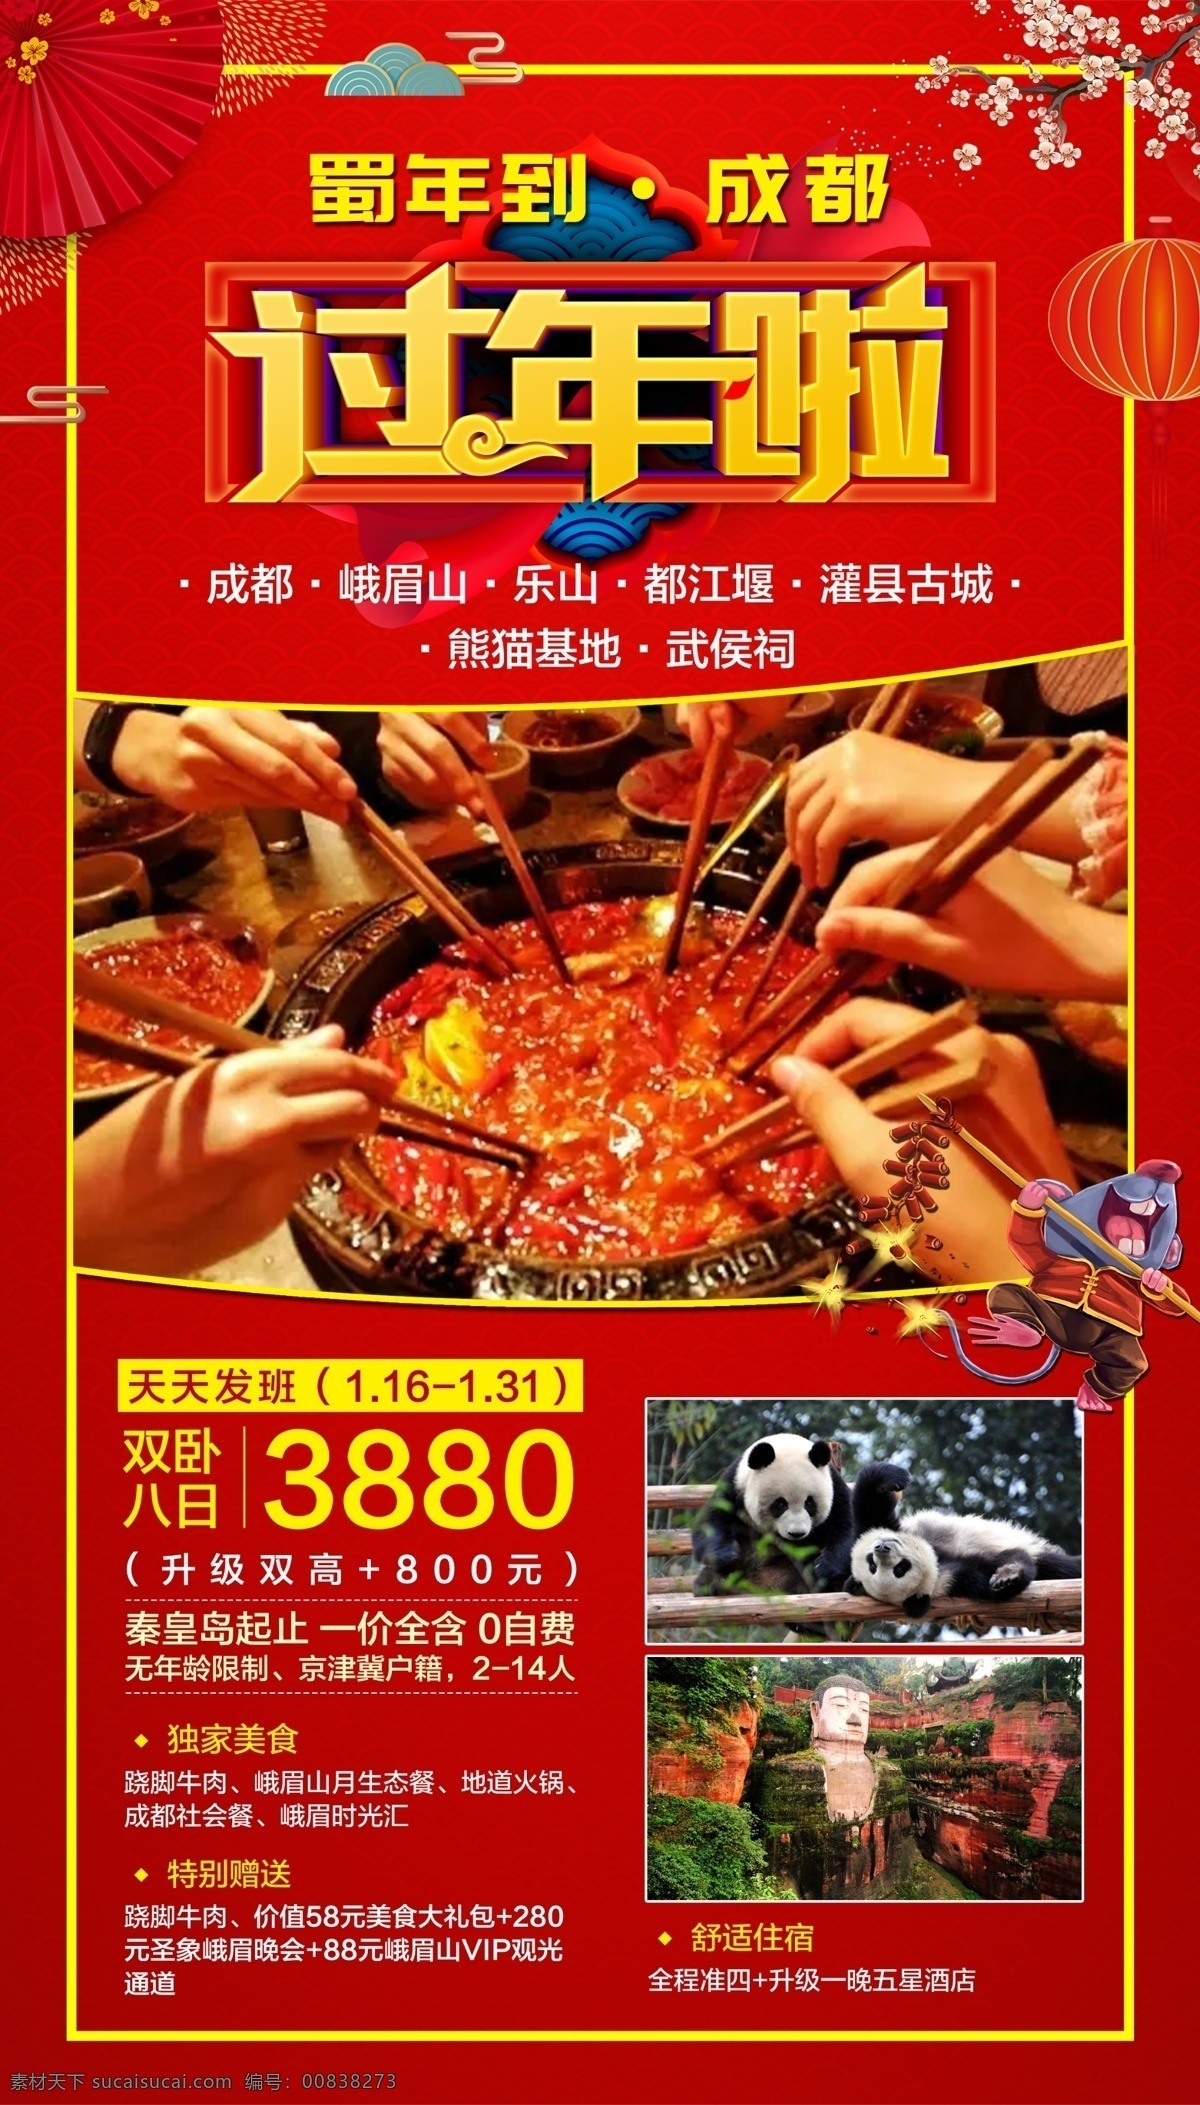 新年旅游 春节 旅游 旅行 红色海报 成都新年 旅行社